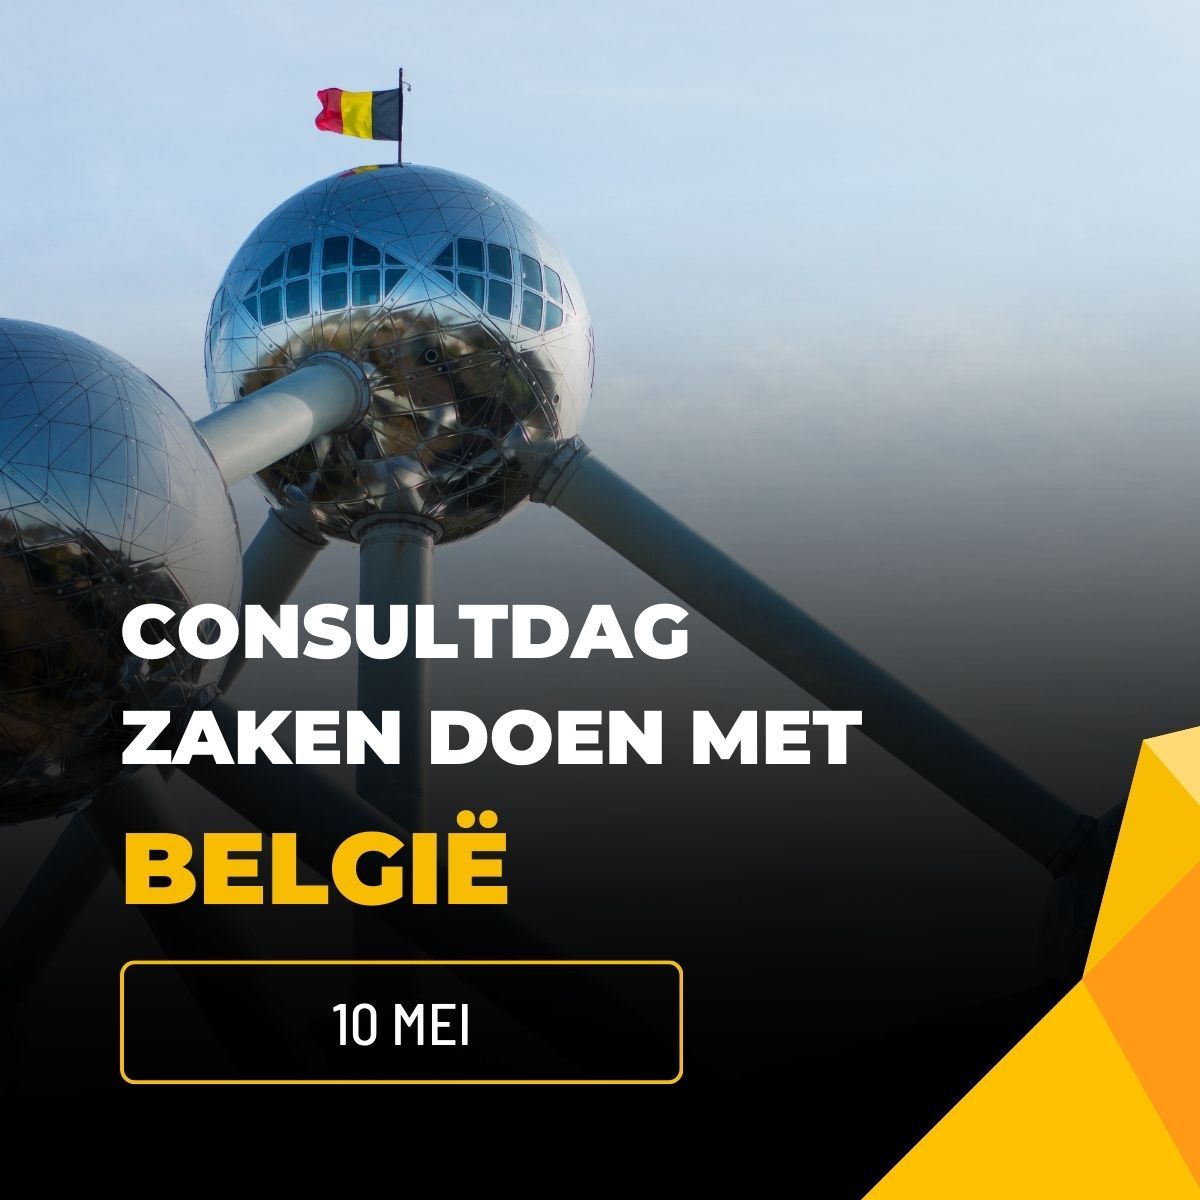 Consultdag Zakendoen met België